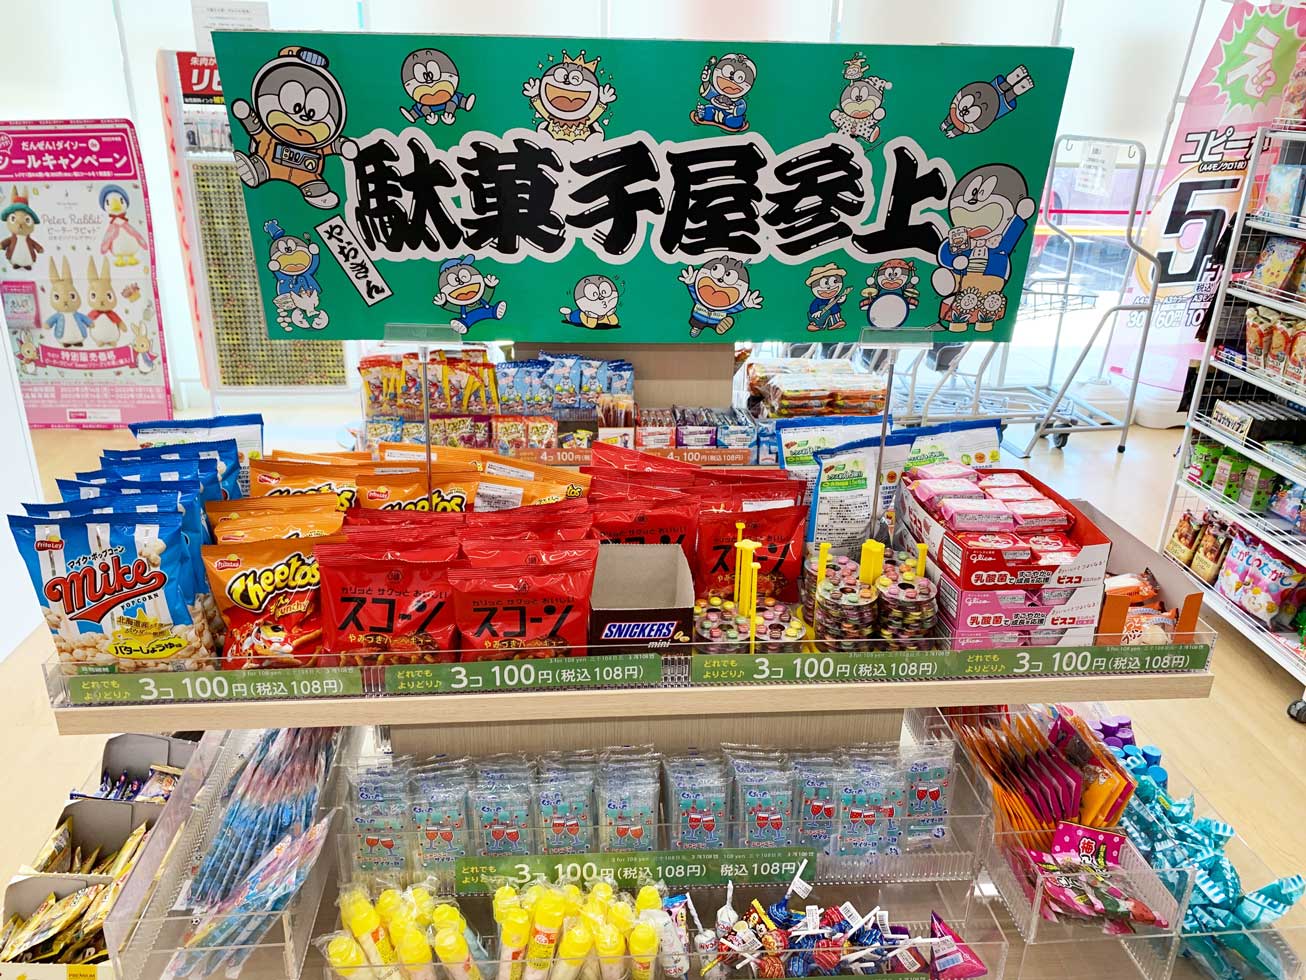 ダイソーの駄菓子種類・価格一覧。3個100円・4個100円など色々な価格帯で提供